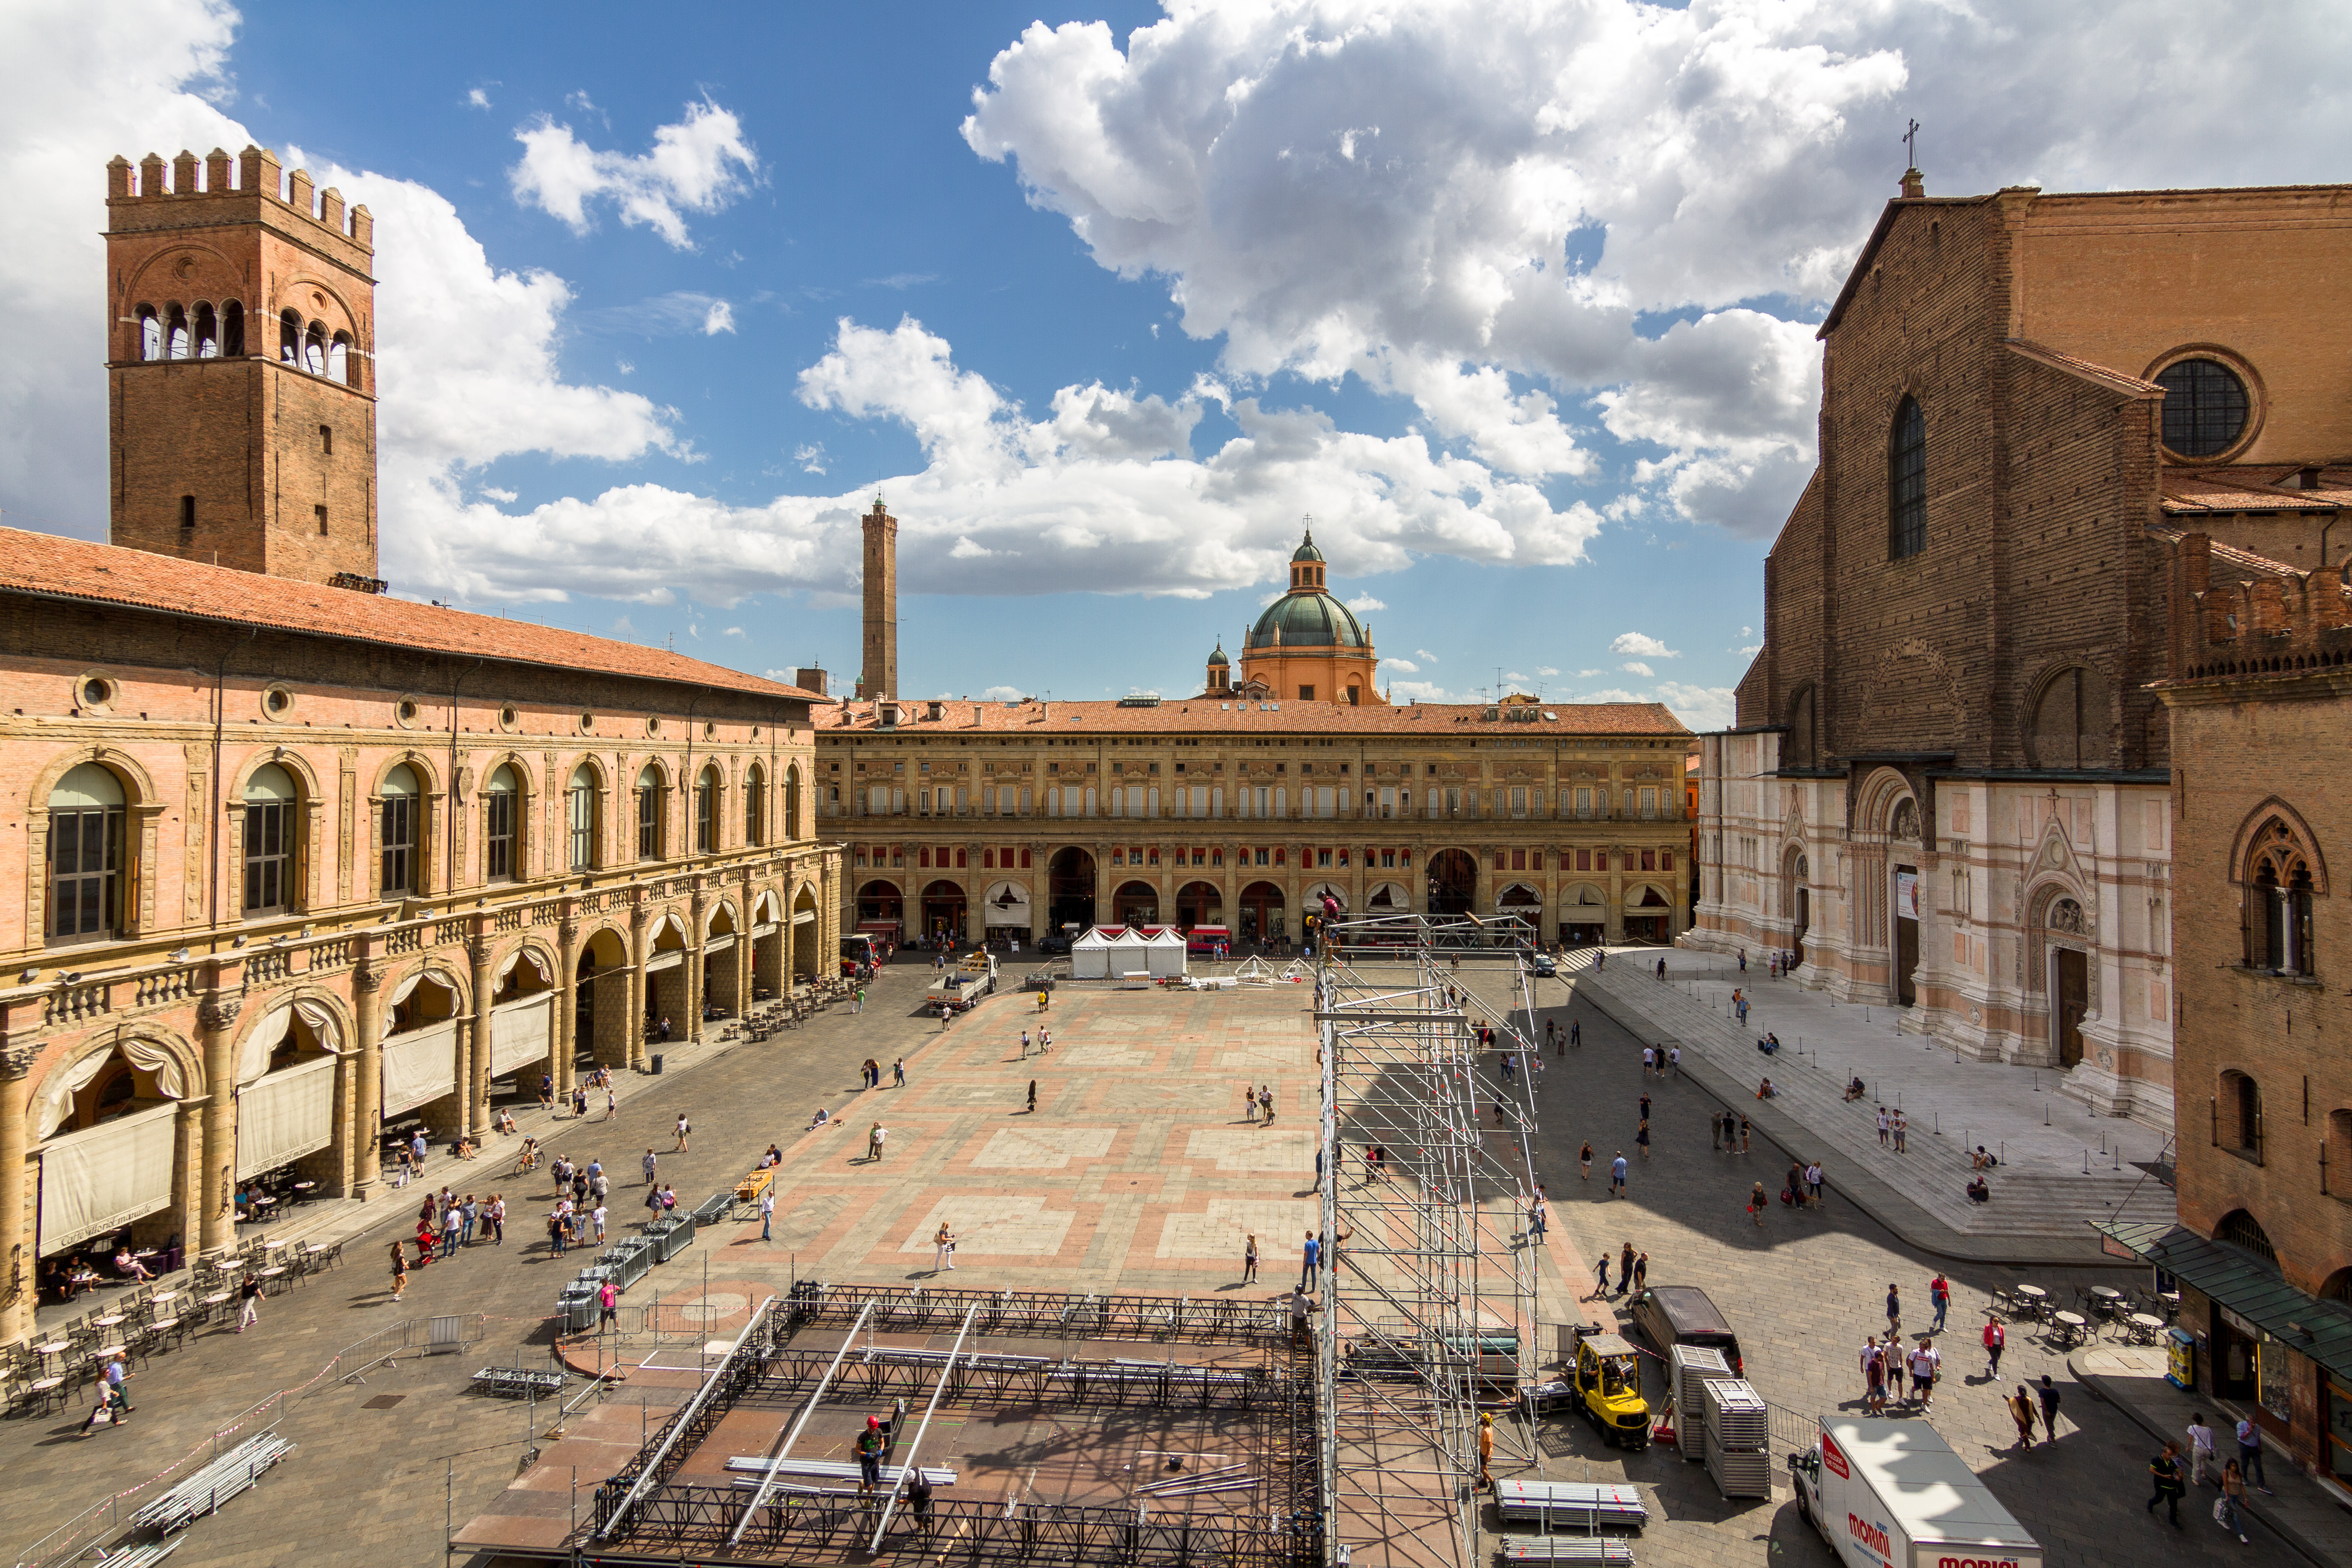 foto: https://upload.wikimedia.org/wikipedia/commons/d/d4/Piazza_Maggiore_da_Palazzo_D%27Accursio.jpg